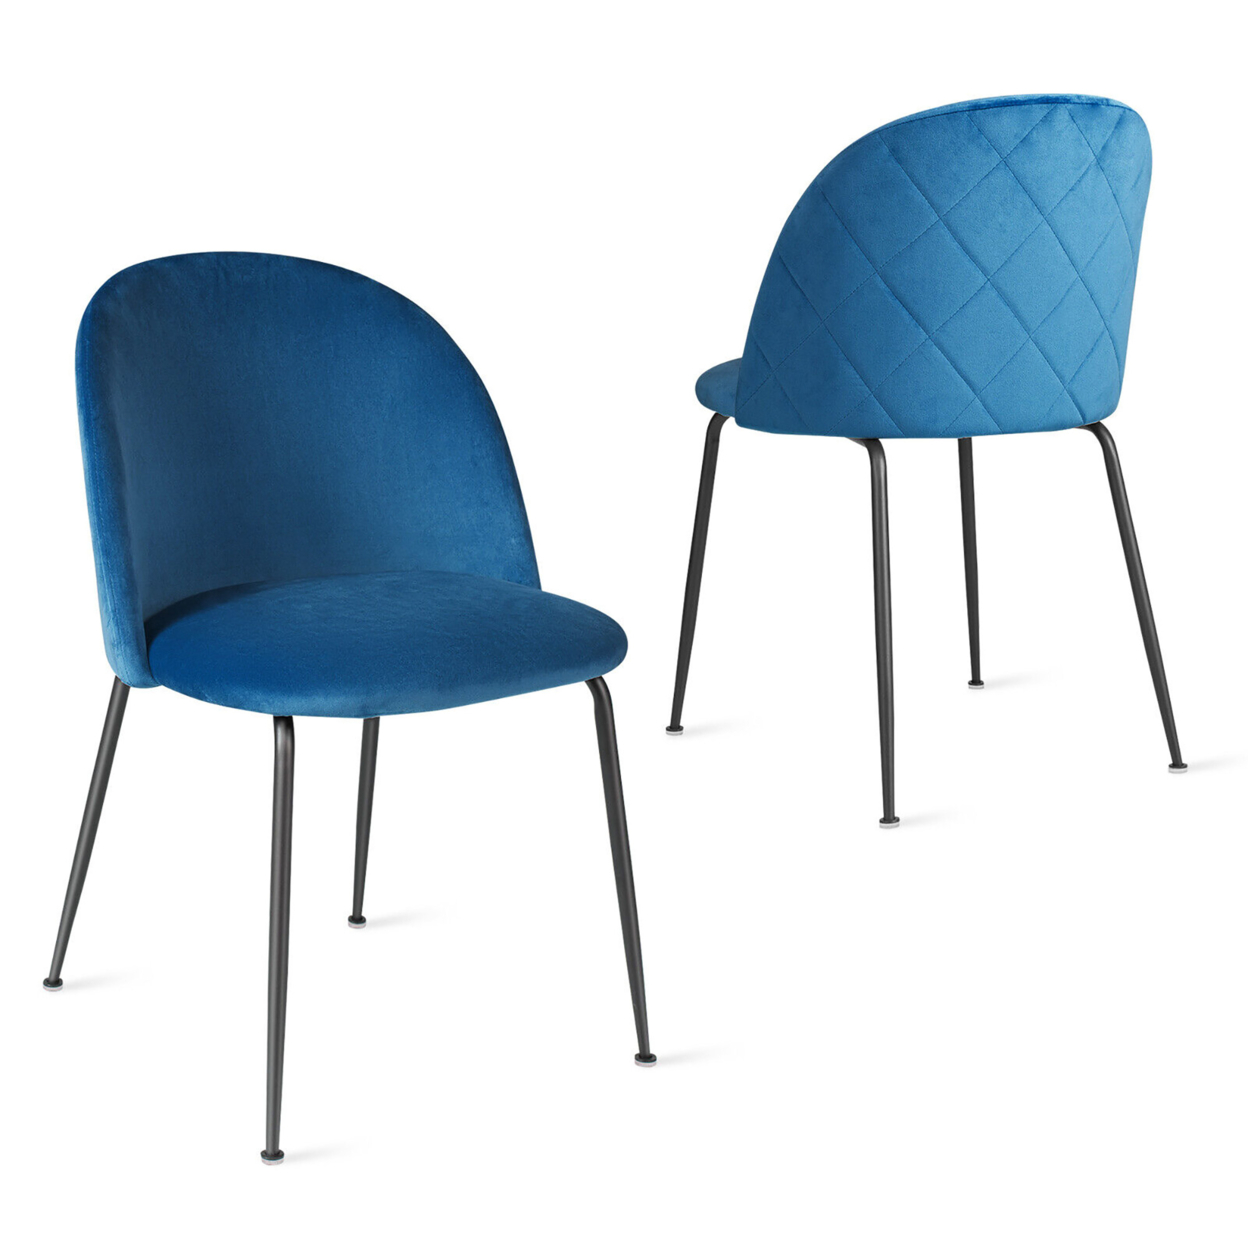 Dining Chair Set Of 2 Upholstered Velvet Chair Set W/ Metal Base For Living Room - Blue